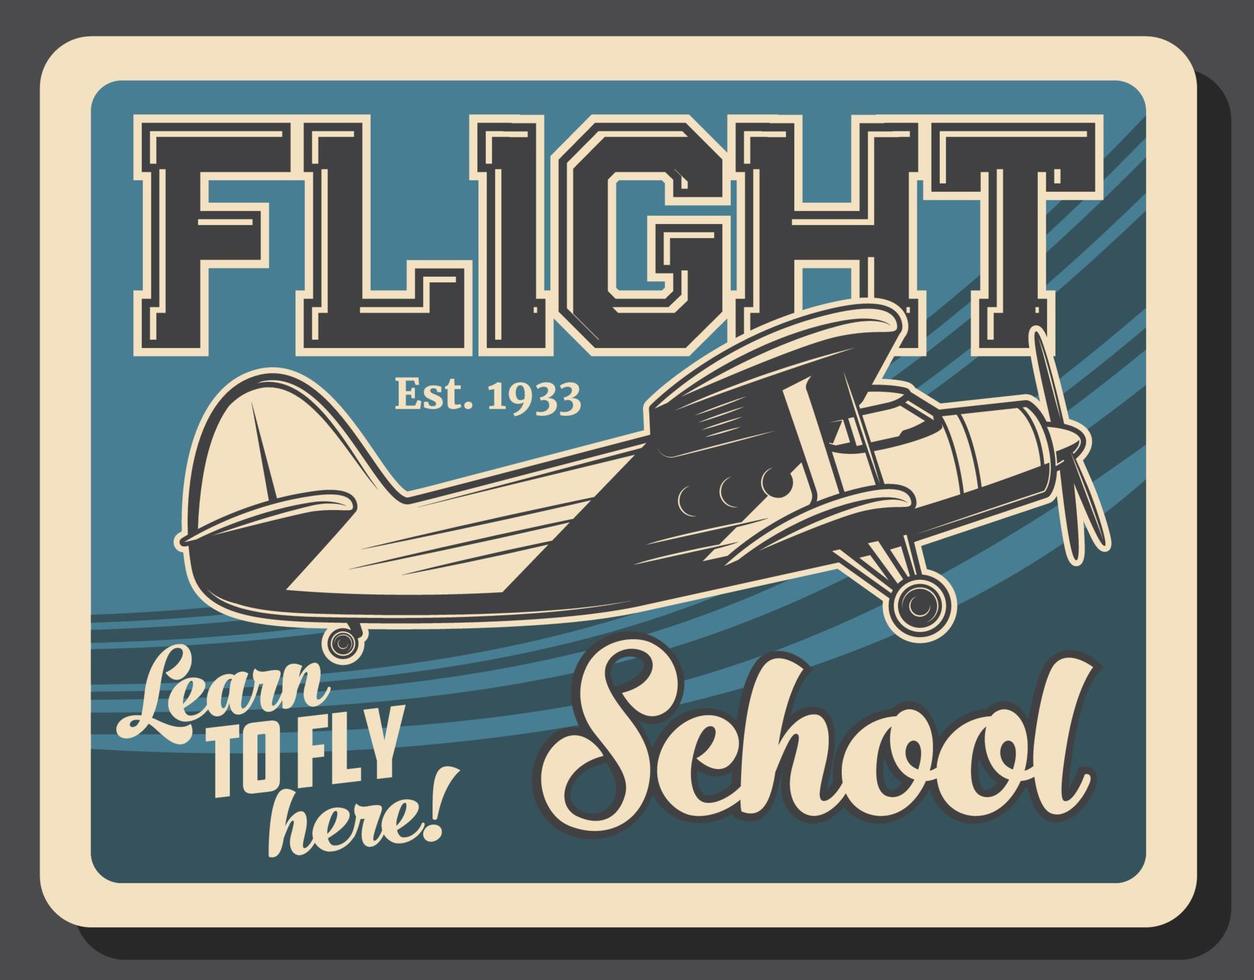 Flight school retro vector poster, vintage plane